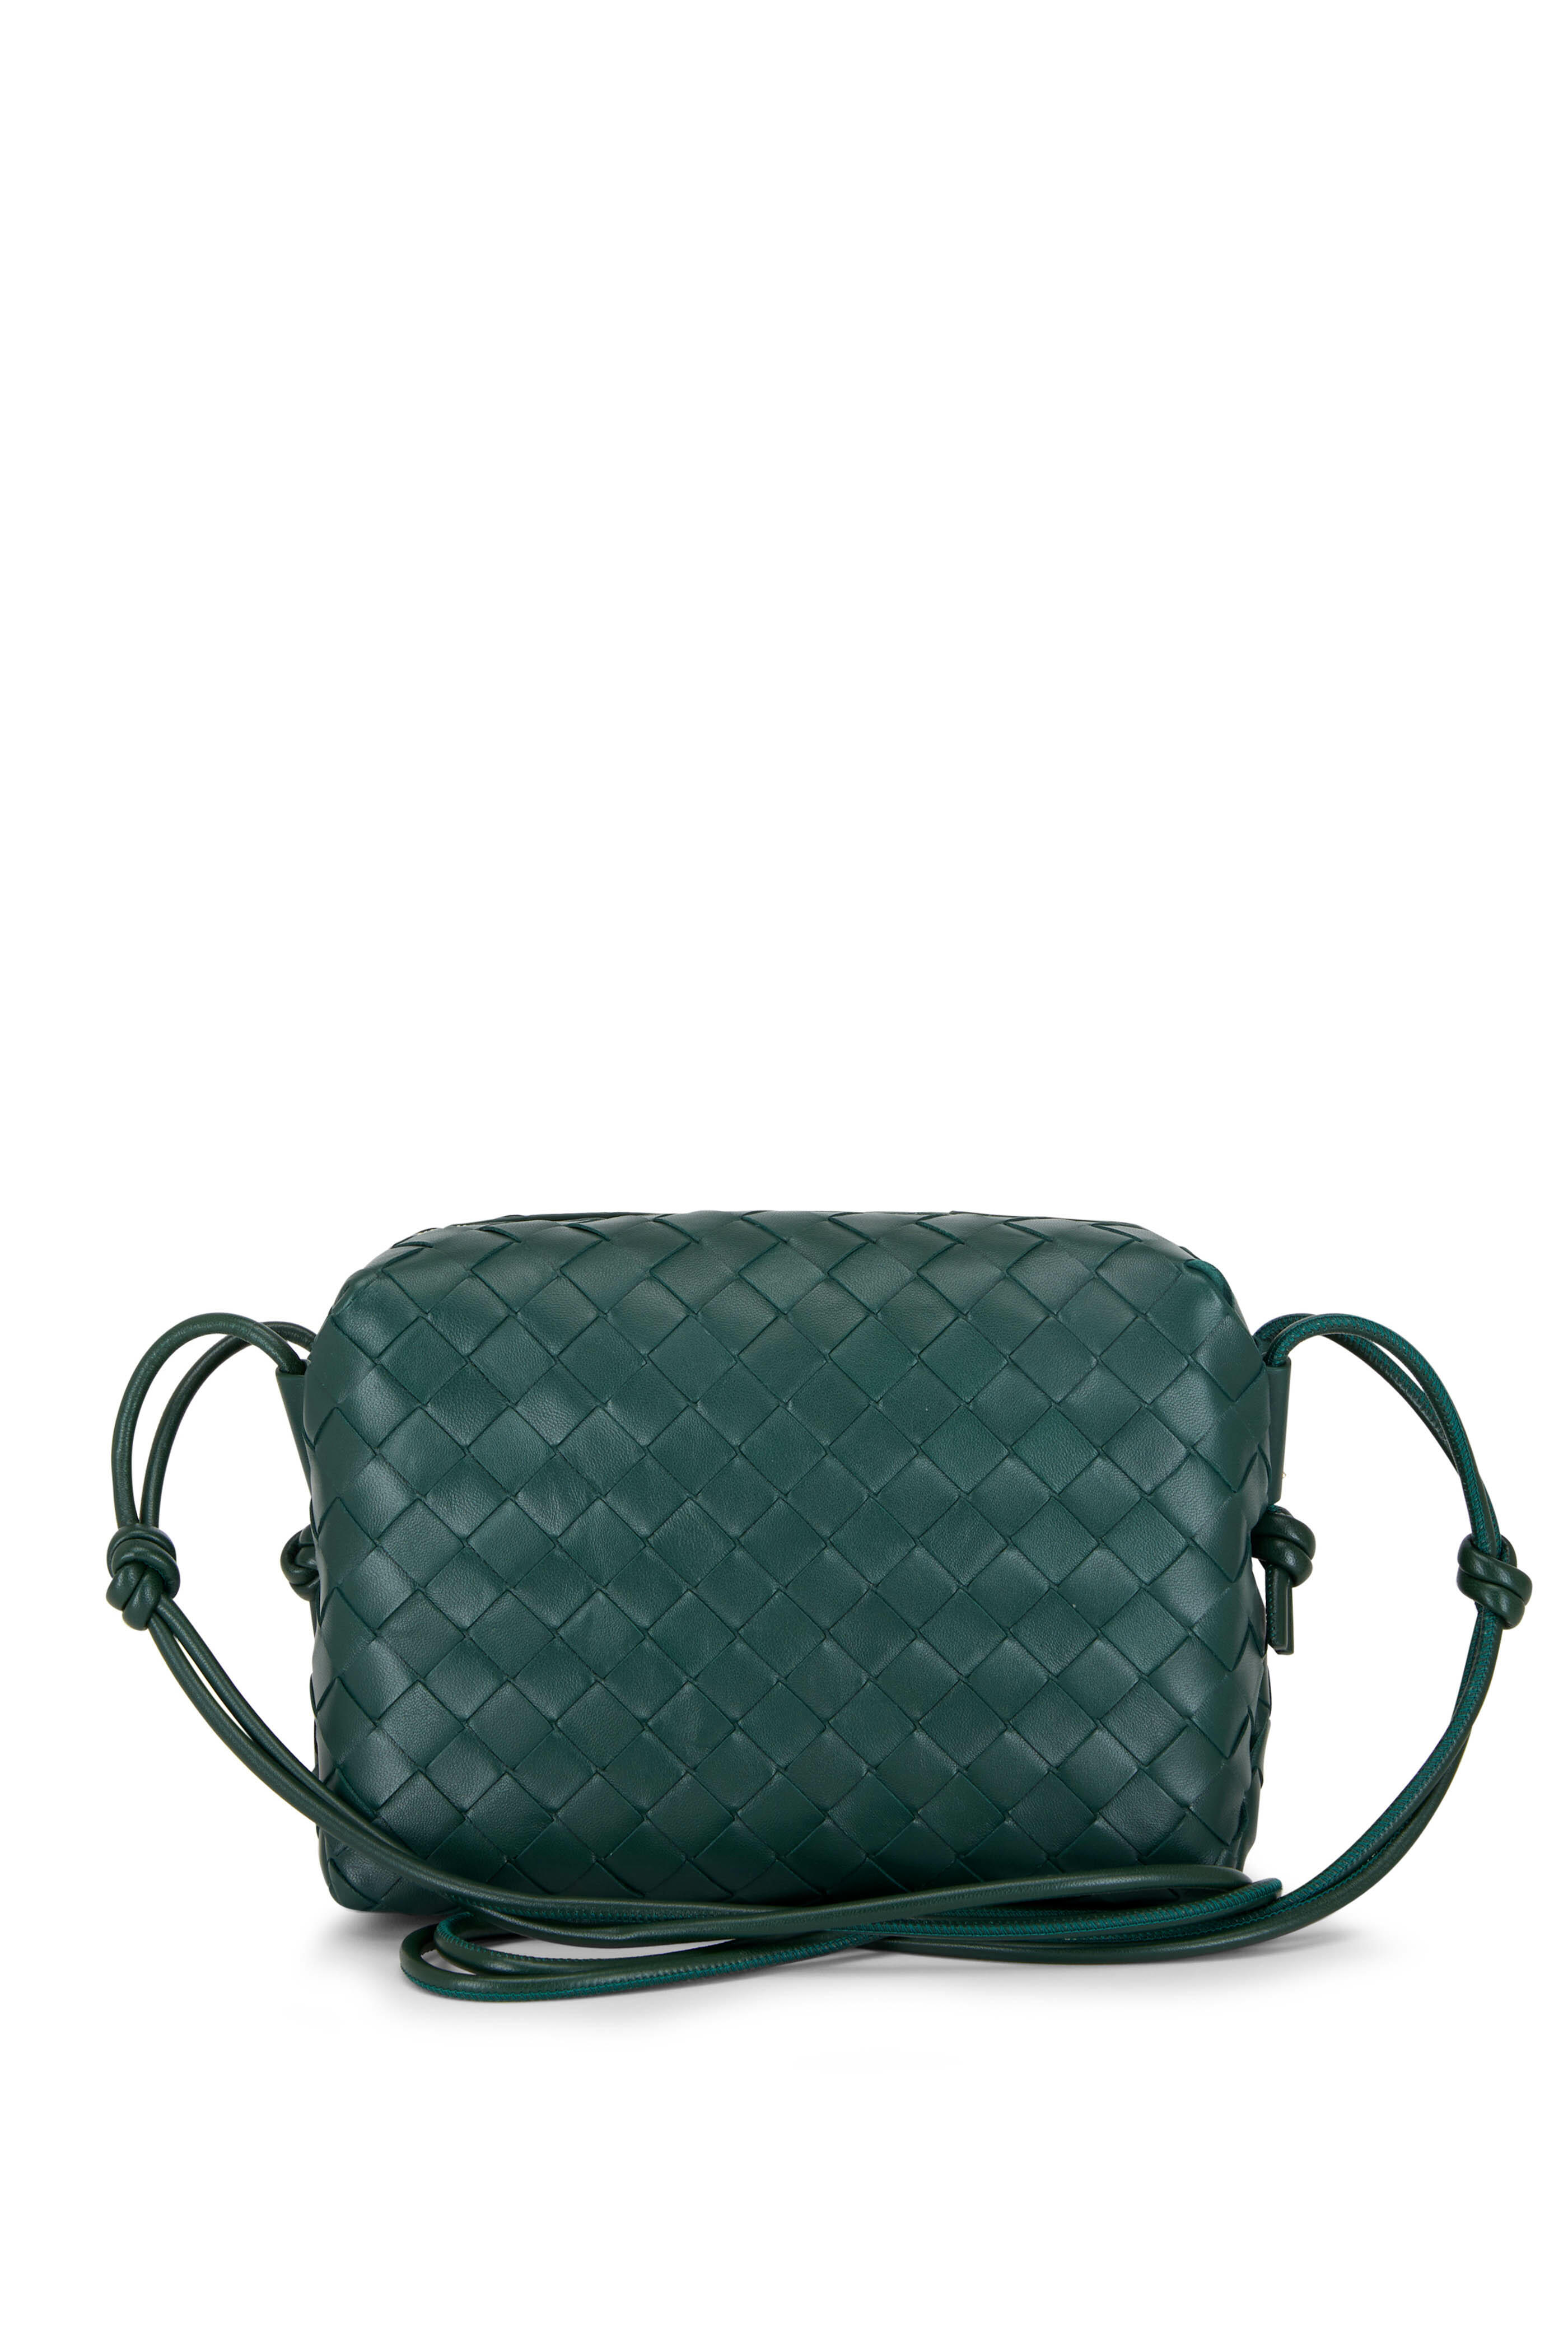 Bottega Veneta Intrecciato Woven Leather Mini Pouch Crossbody Bag